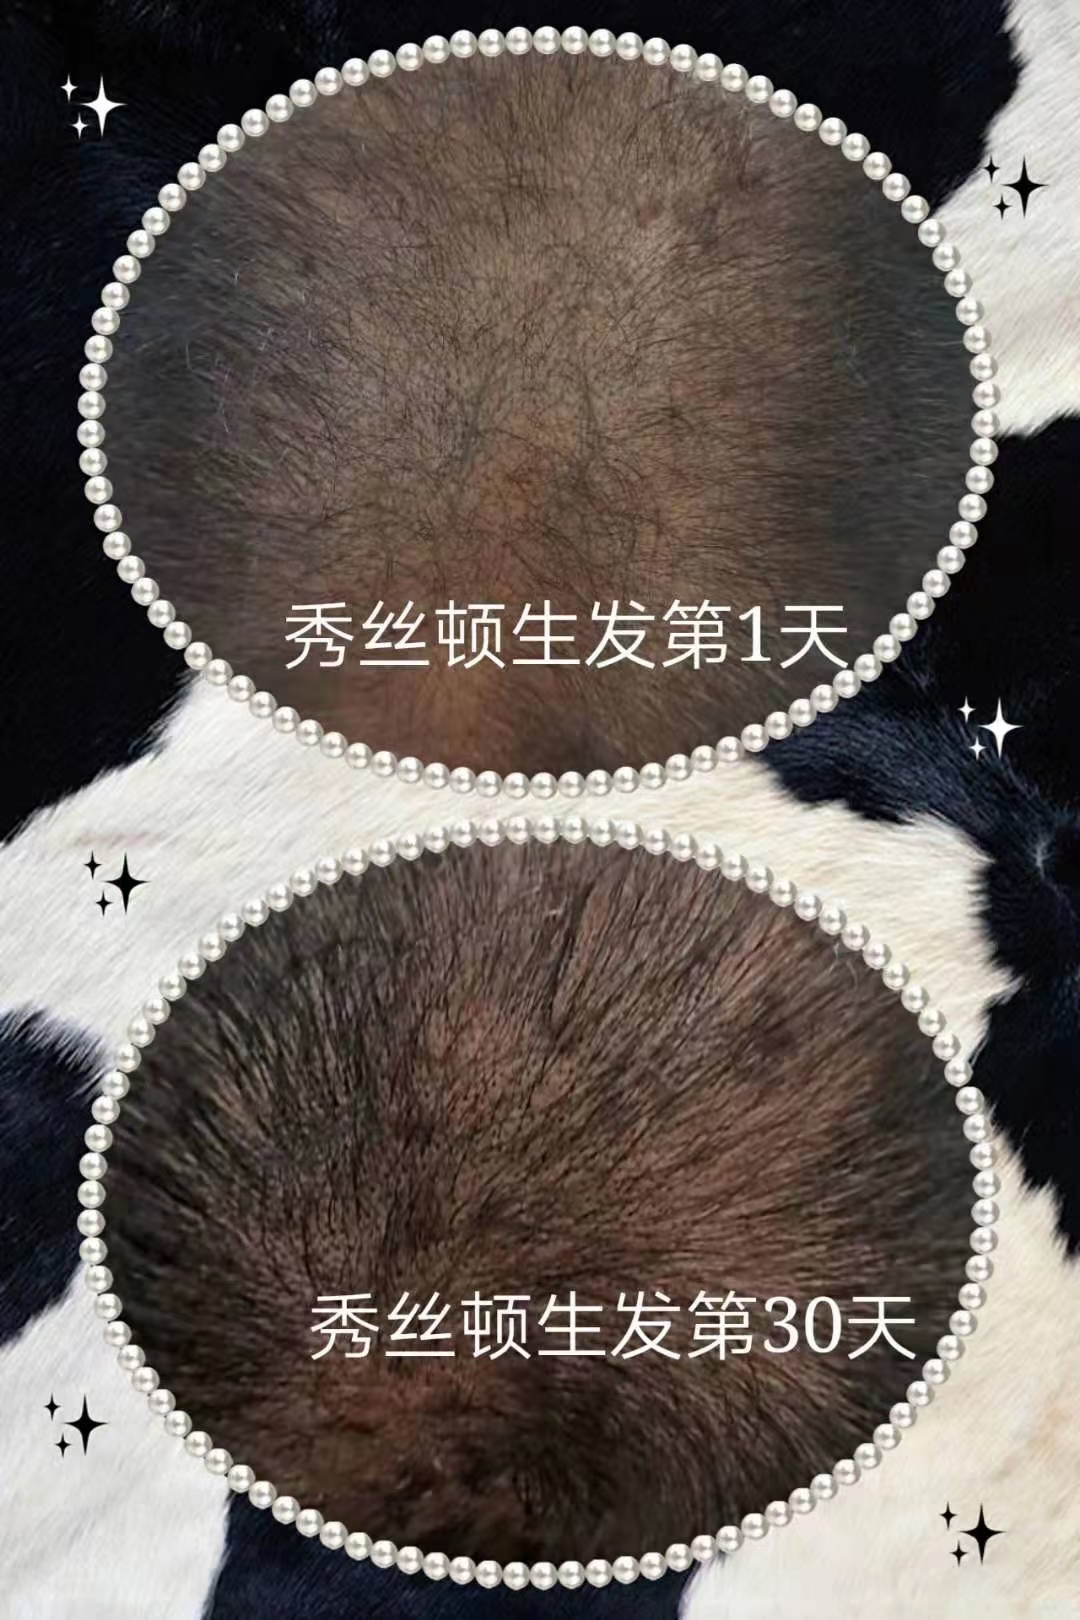 秀丝顿植物养发馆的中药制剂采用了多种天然植物提取物，能够滋养头皮，刺激毛囊